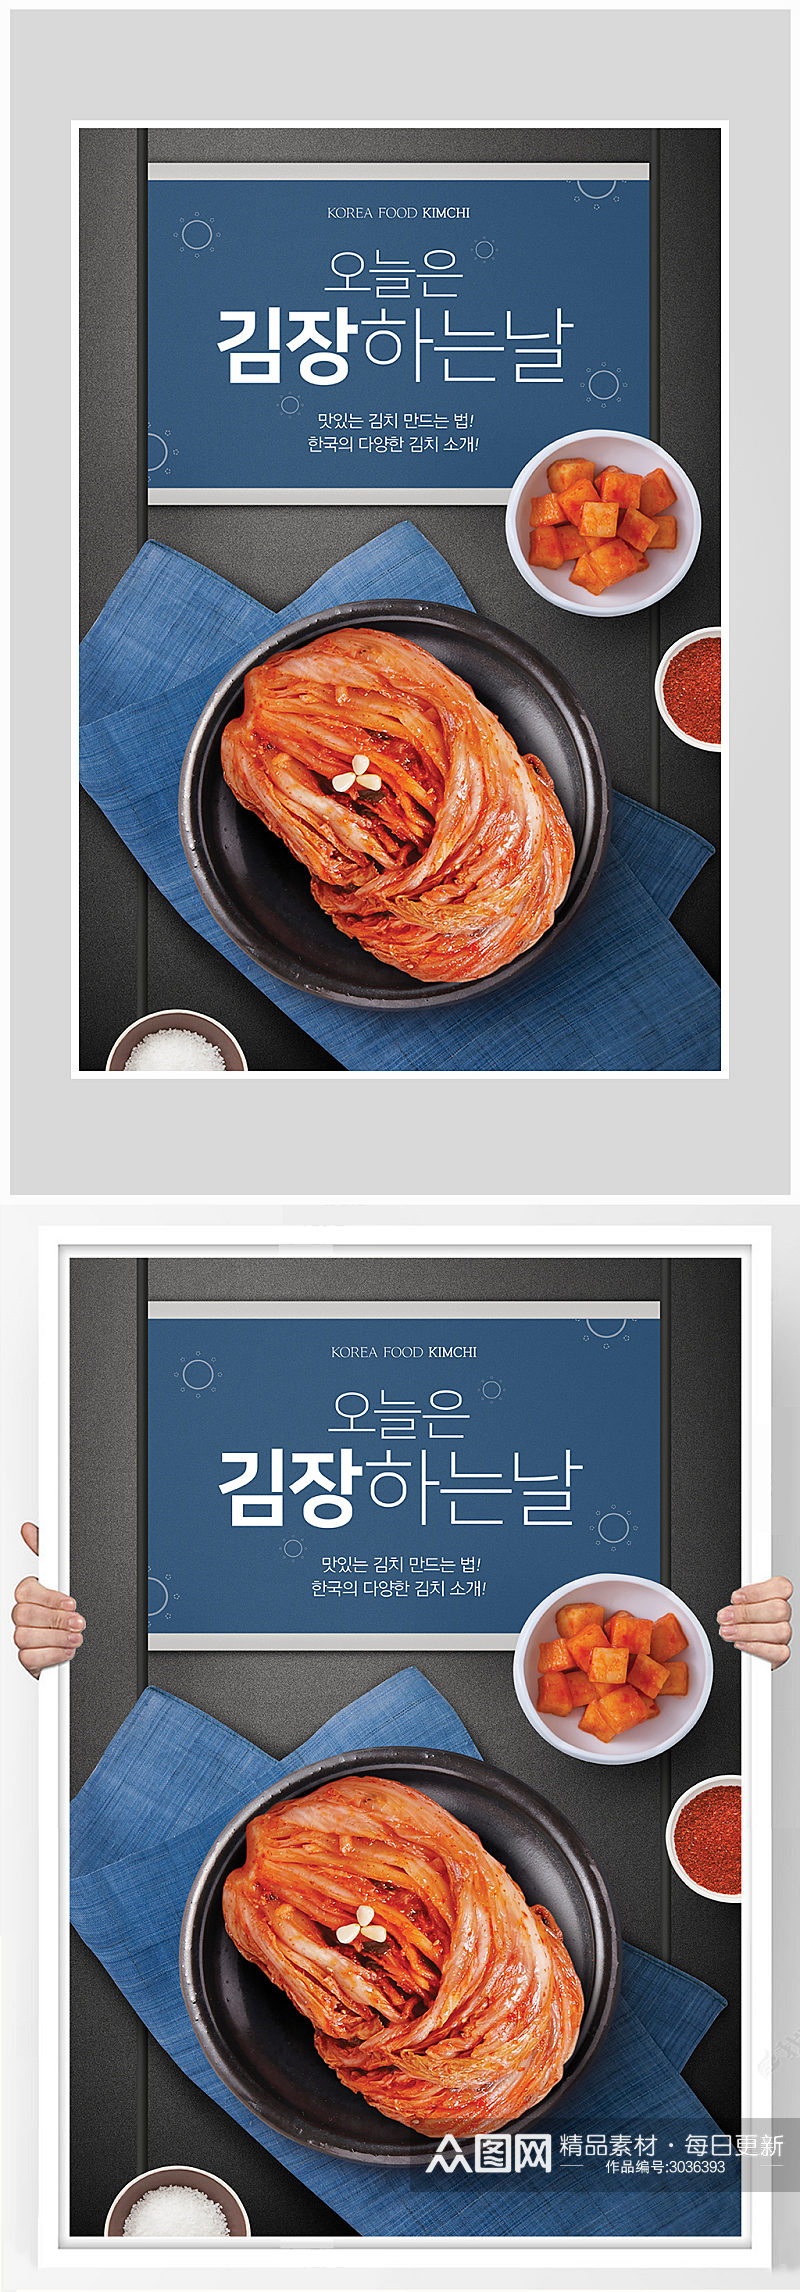 创意大气日韩风泡菜海报设计素材